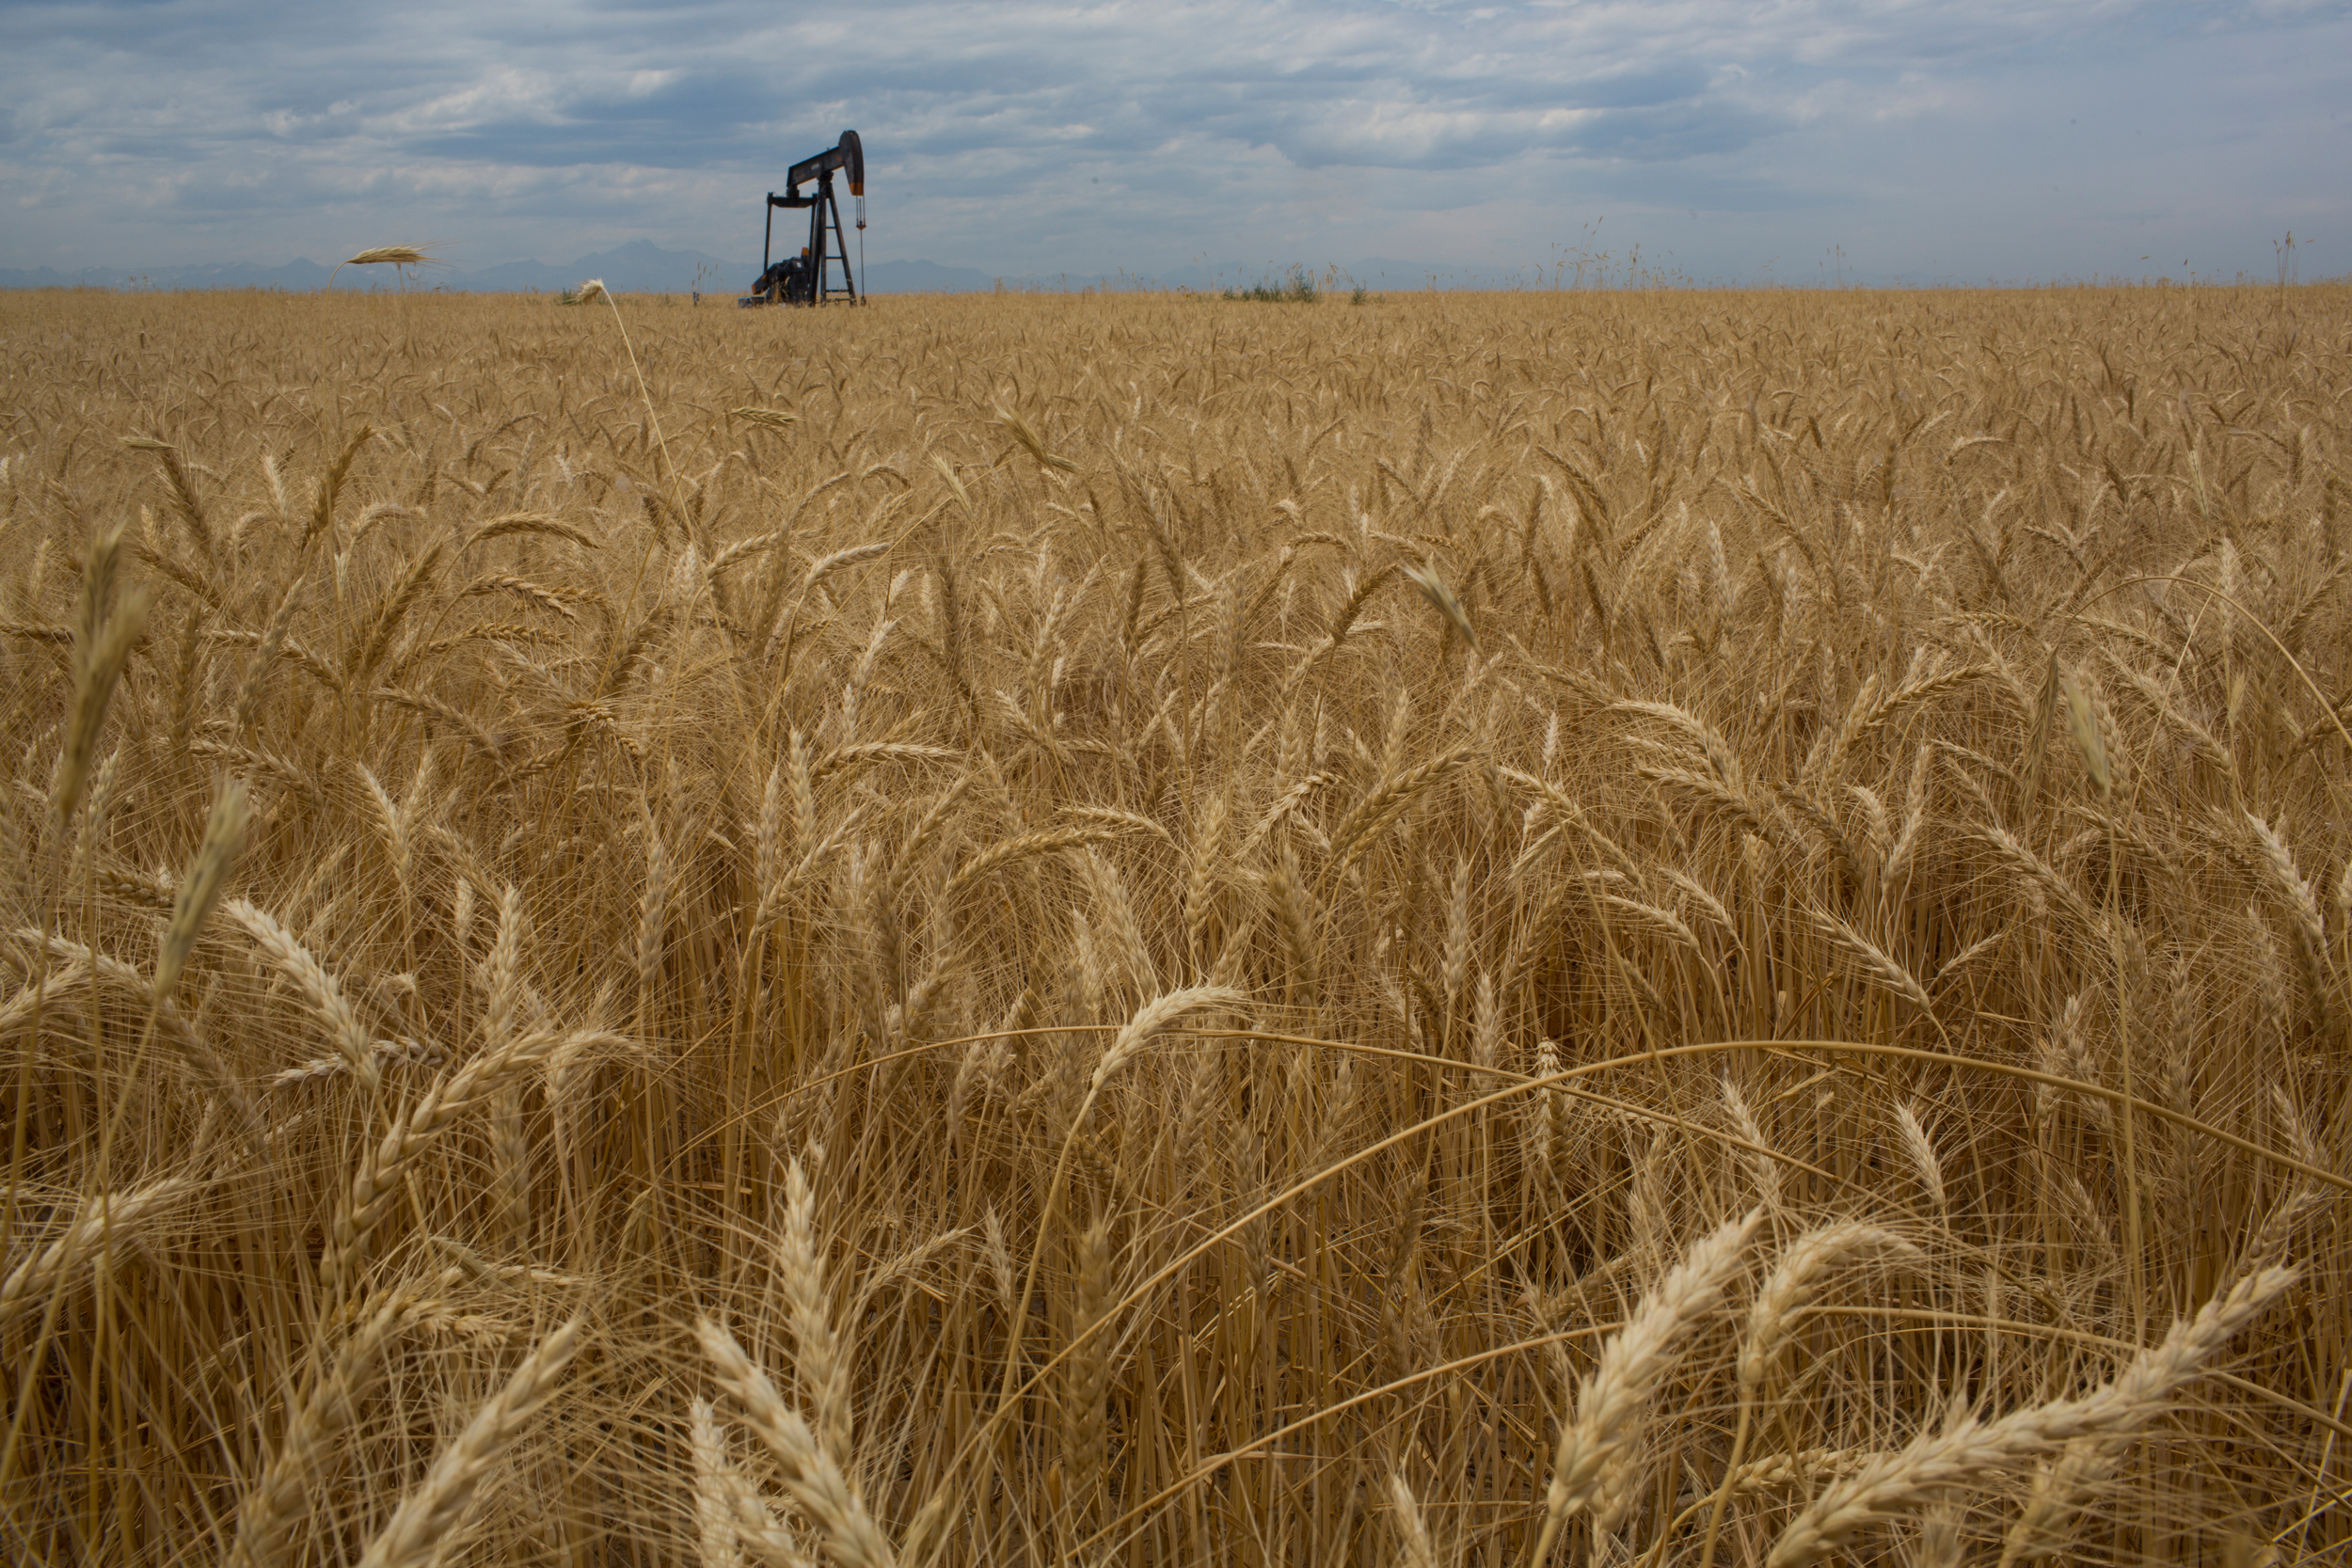 Le blé, aussi populaire que toxique - Greenpeace France